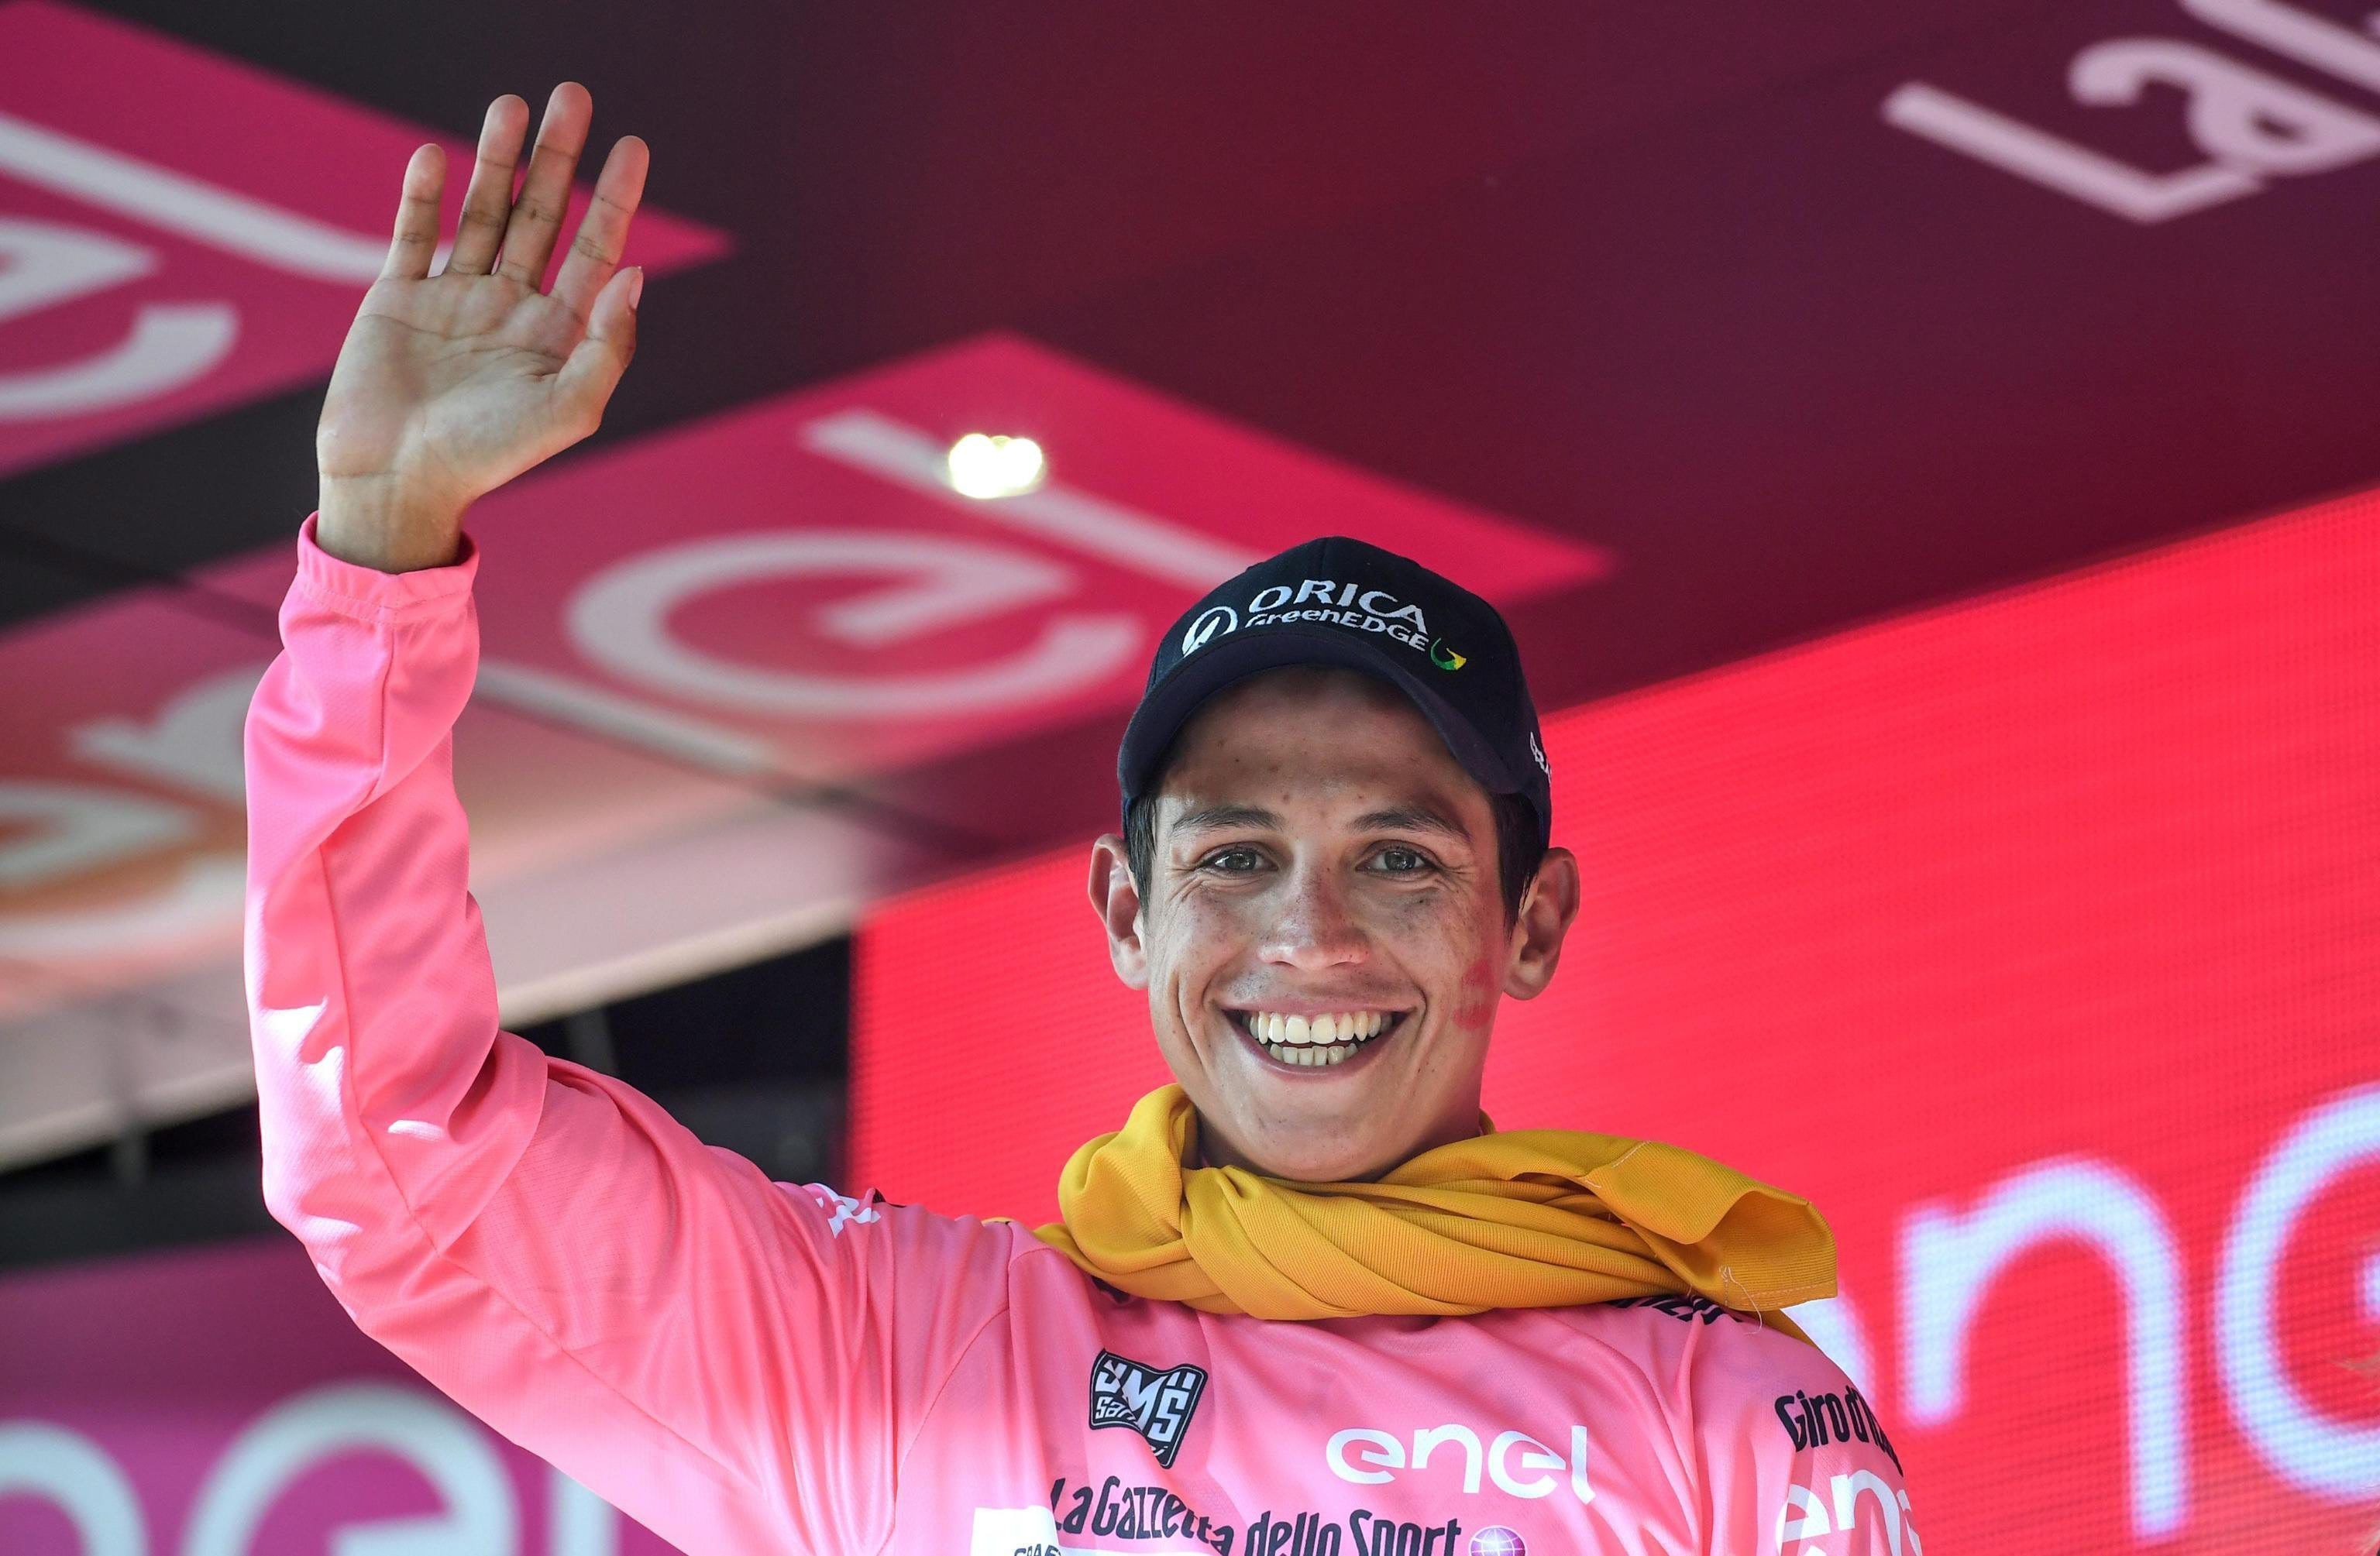 Esteban Chaves és el nou líder del Giro